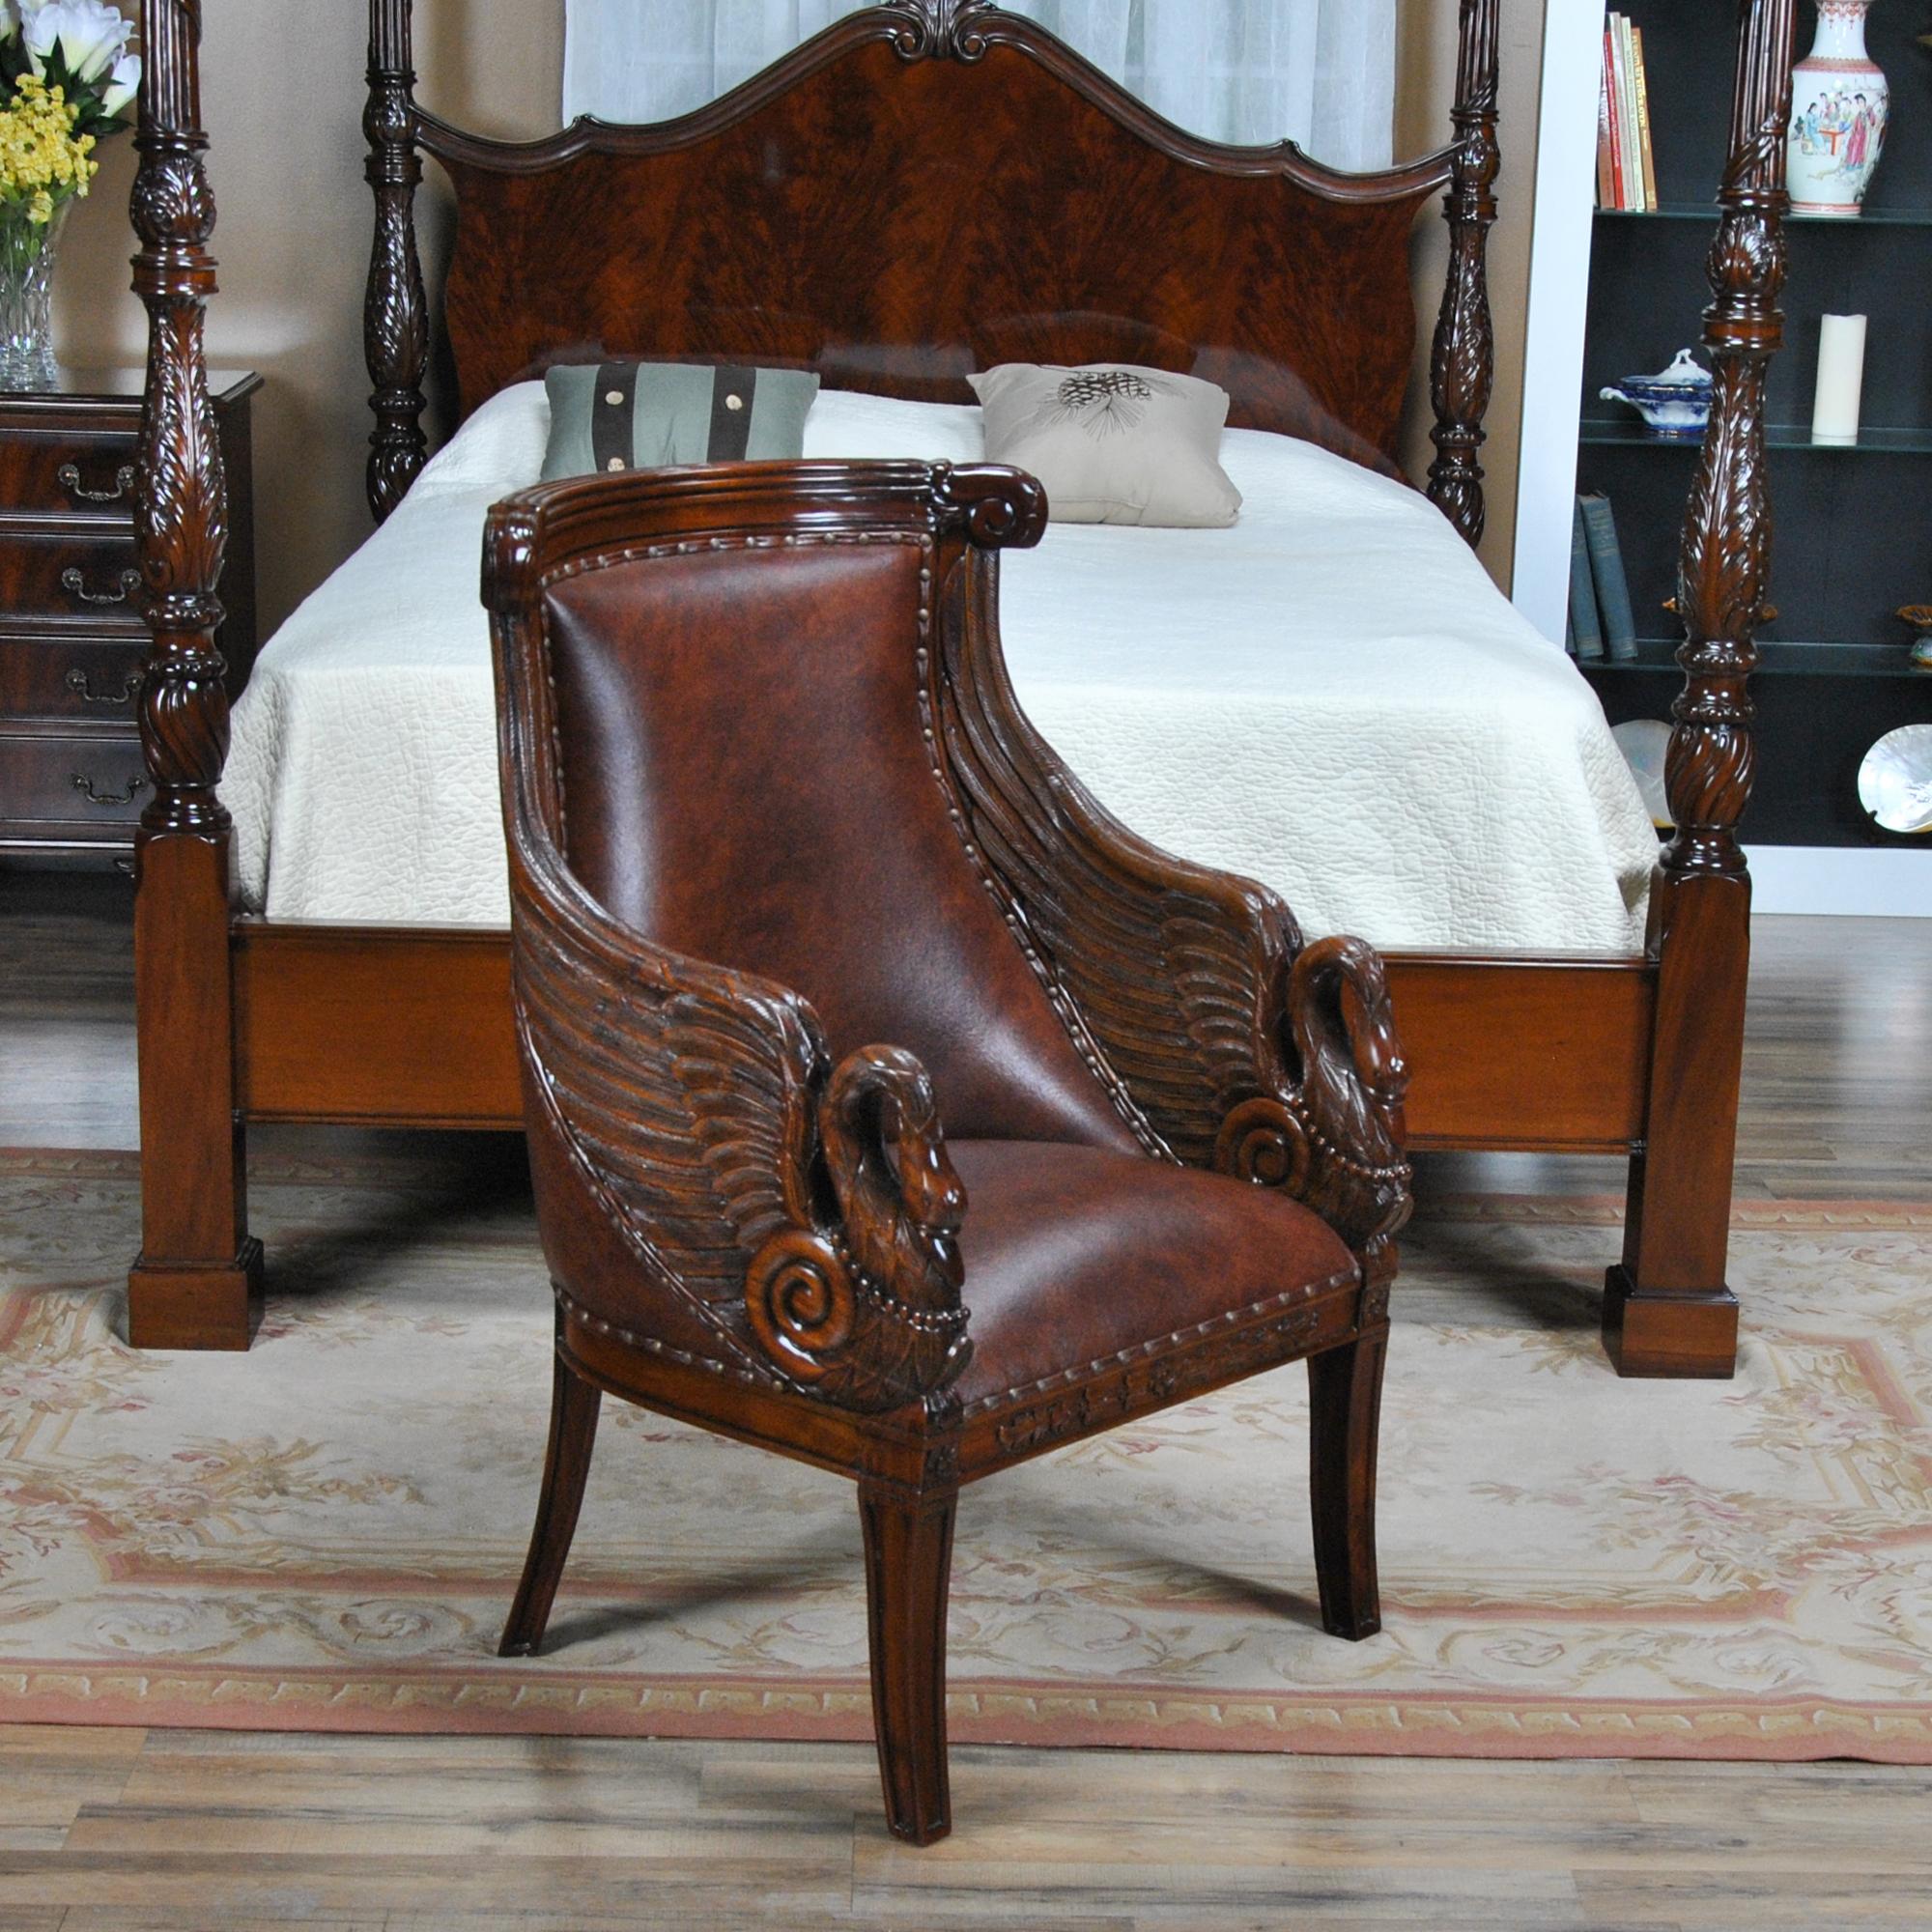 Cette chaise à bras Swan en cuir haut de gamme de Niagara Furniture est impressionnante avec ses détails en acajou massif sculptés à la main et son revêtement en cuir véritable pleine fleur. Un look très design avec un cadre solide et confortable.